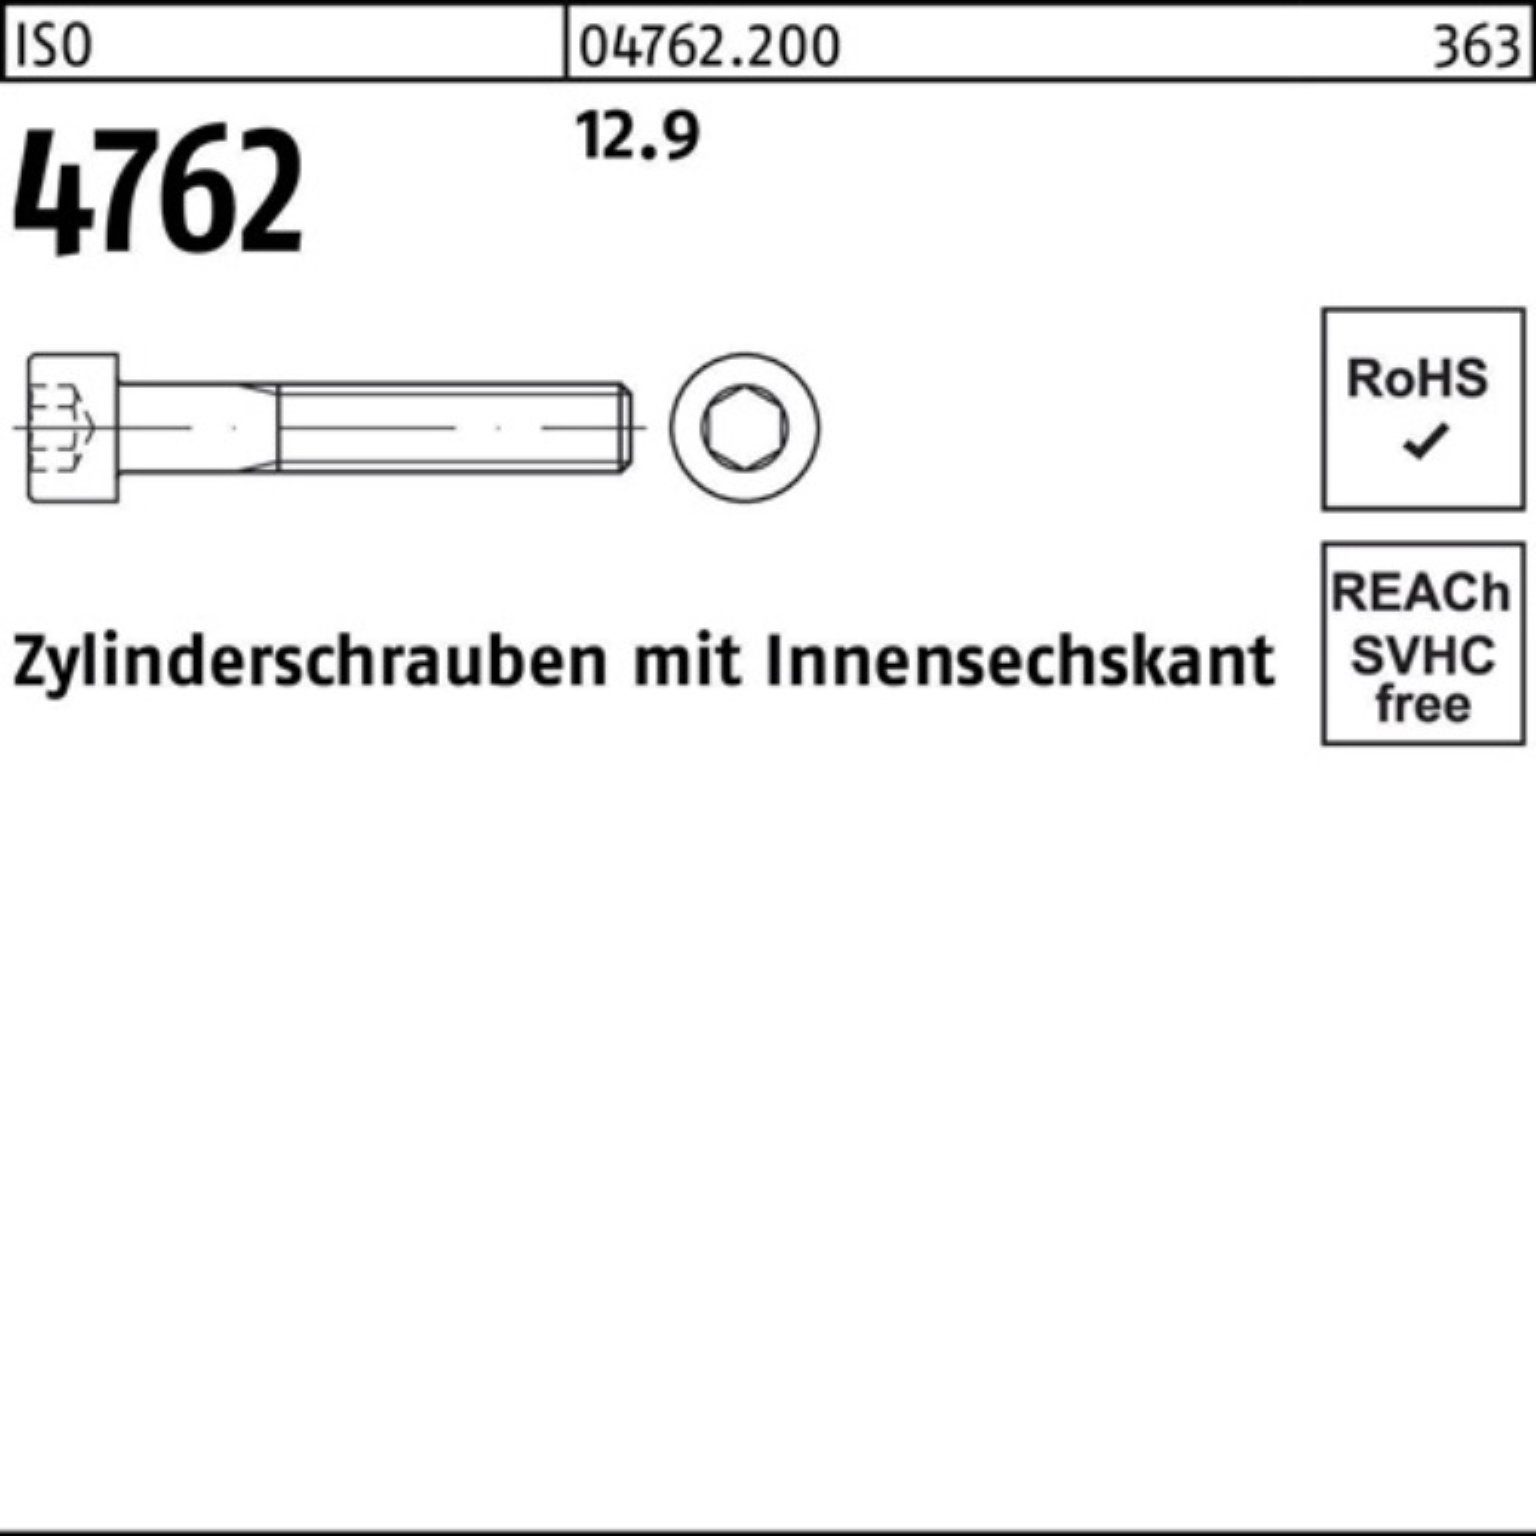 Zylinderschraube Zylinderschraube Stück Reyher 85 M5x 4762 200er ISO Pack Innen-6kt 200 12.9